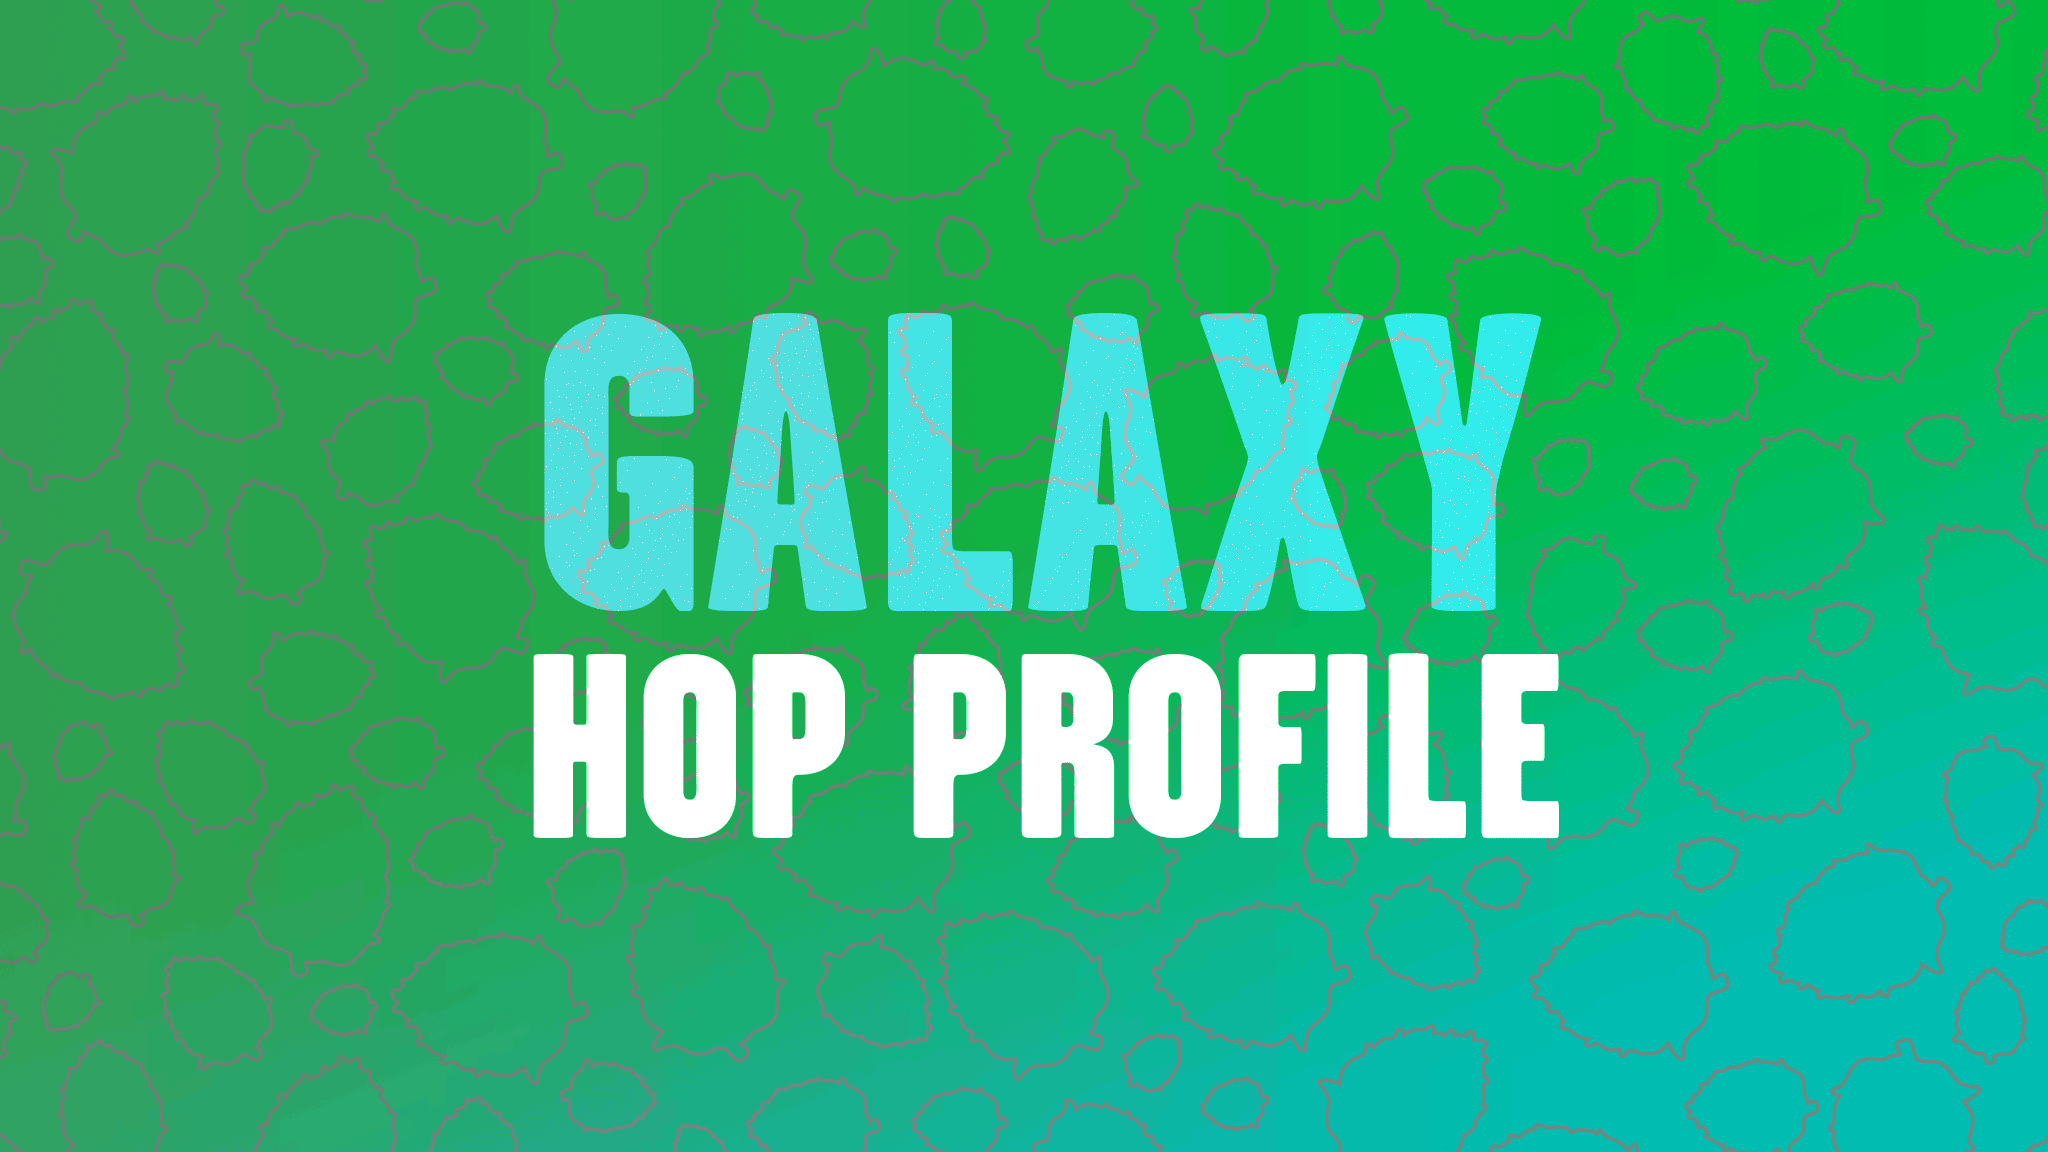 Hop Profile: Galaxy